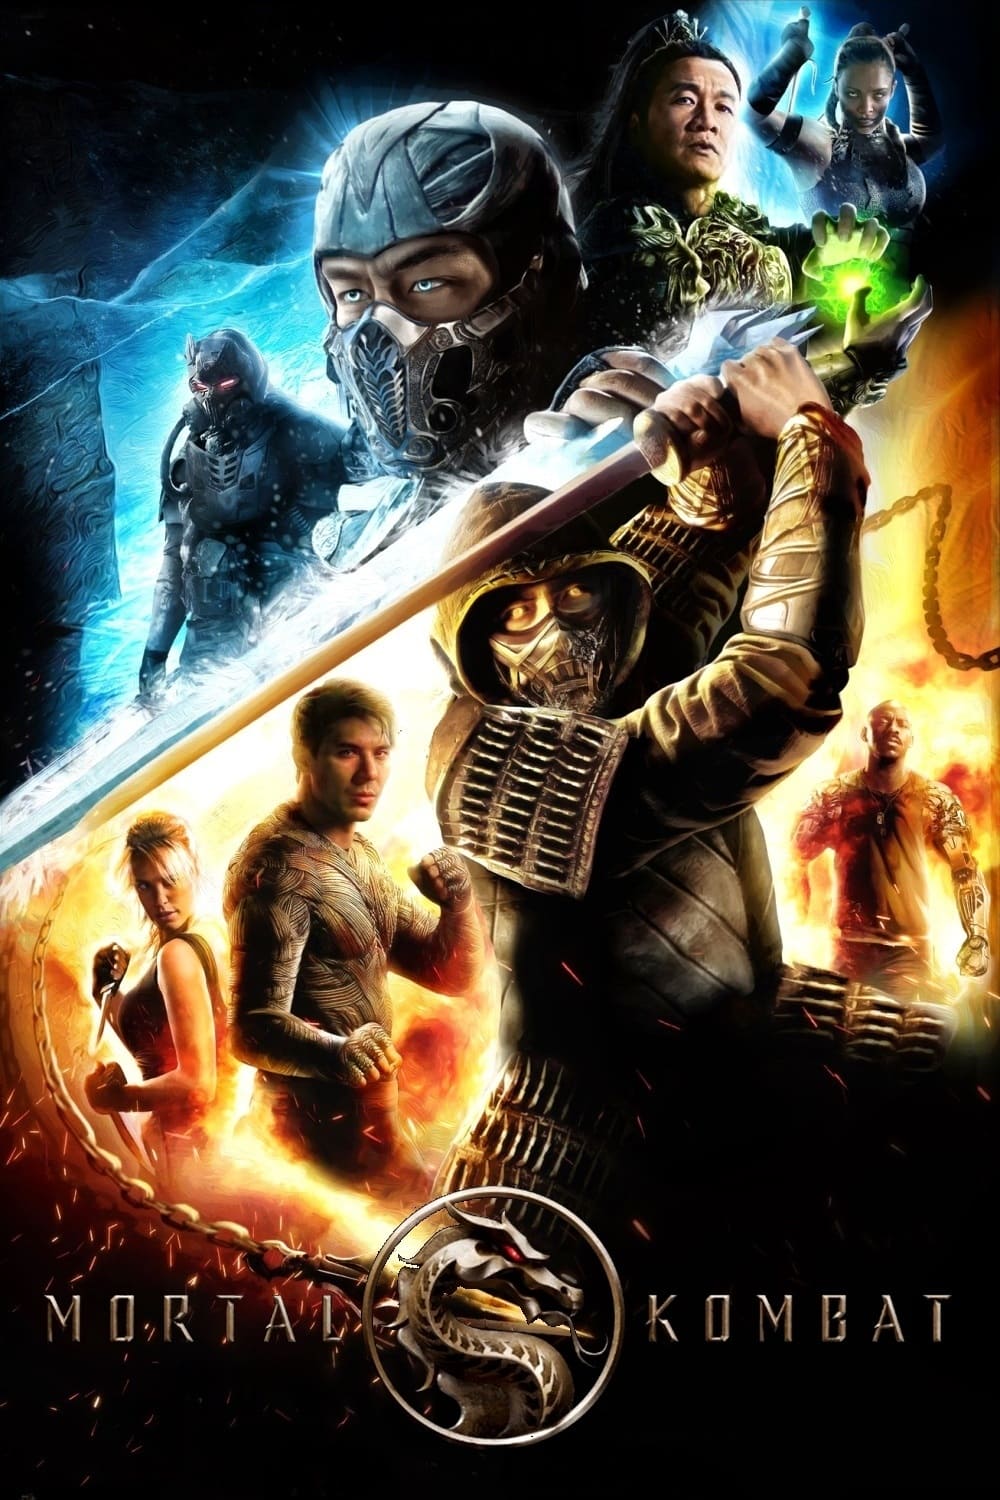 Mortal Kombat (2021) HD 1080p Latino